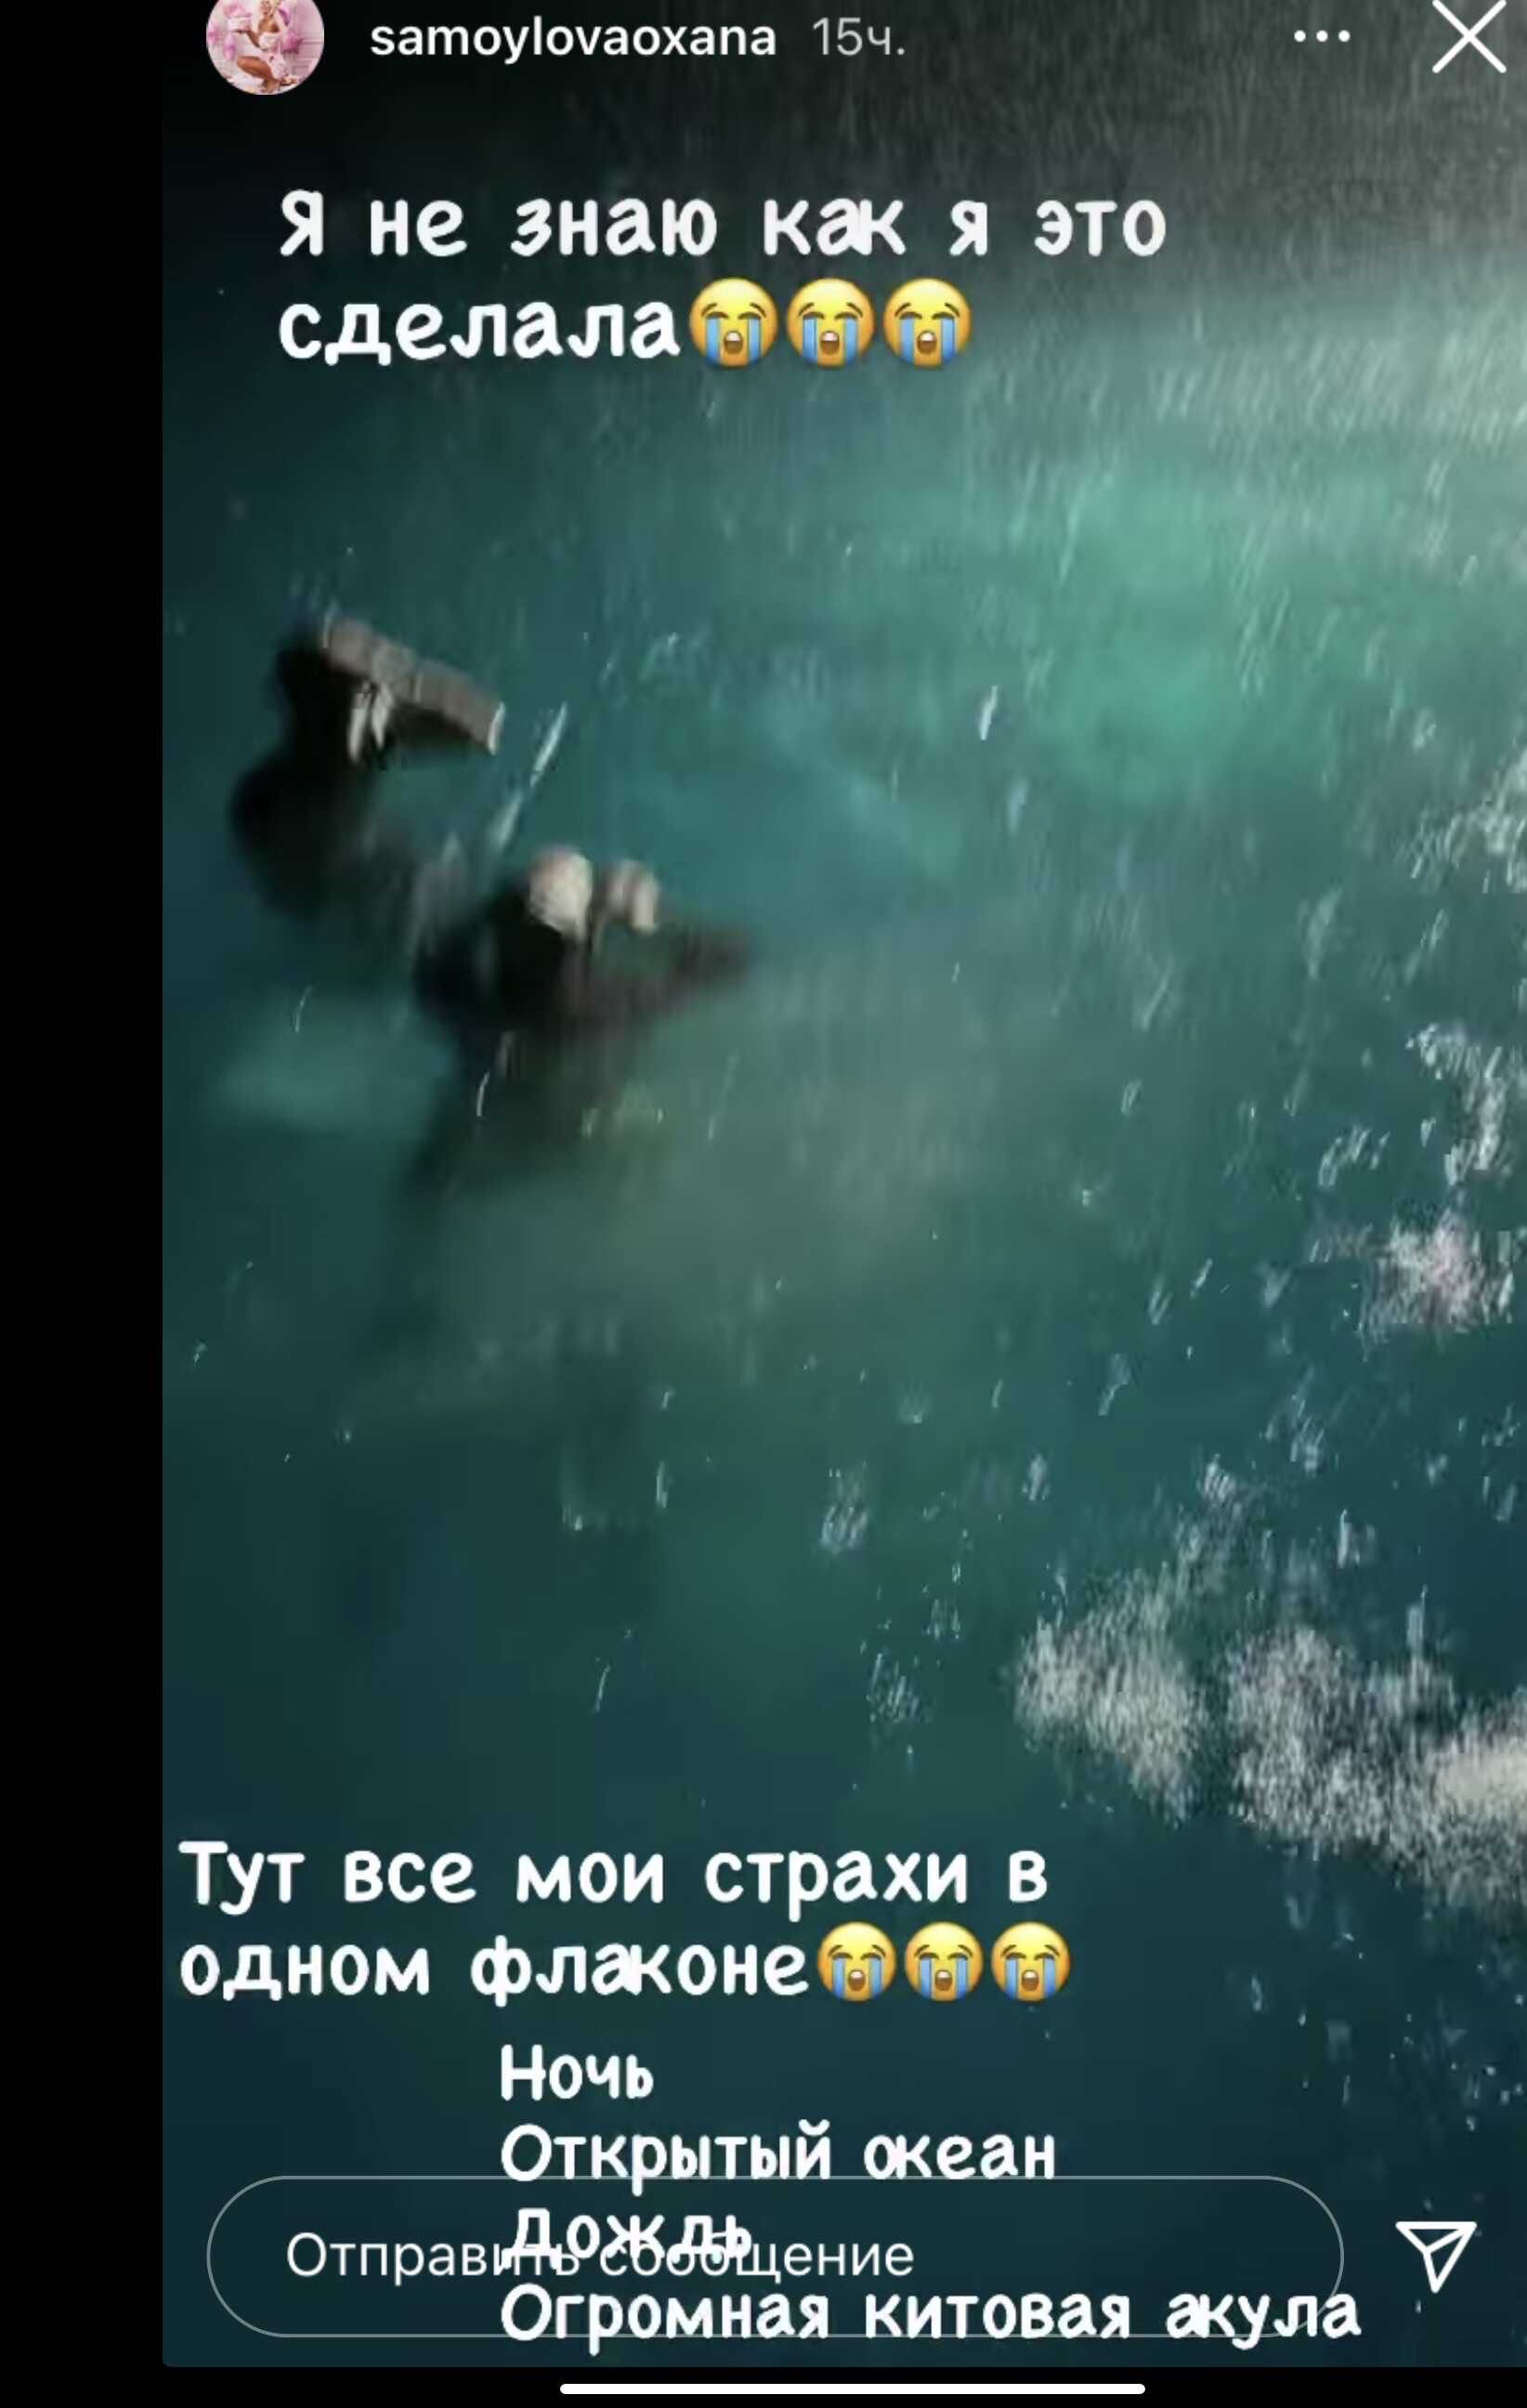 Джиган и Оксана Самойлова поплавали в компании гигантской китовой акулы